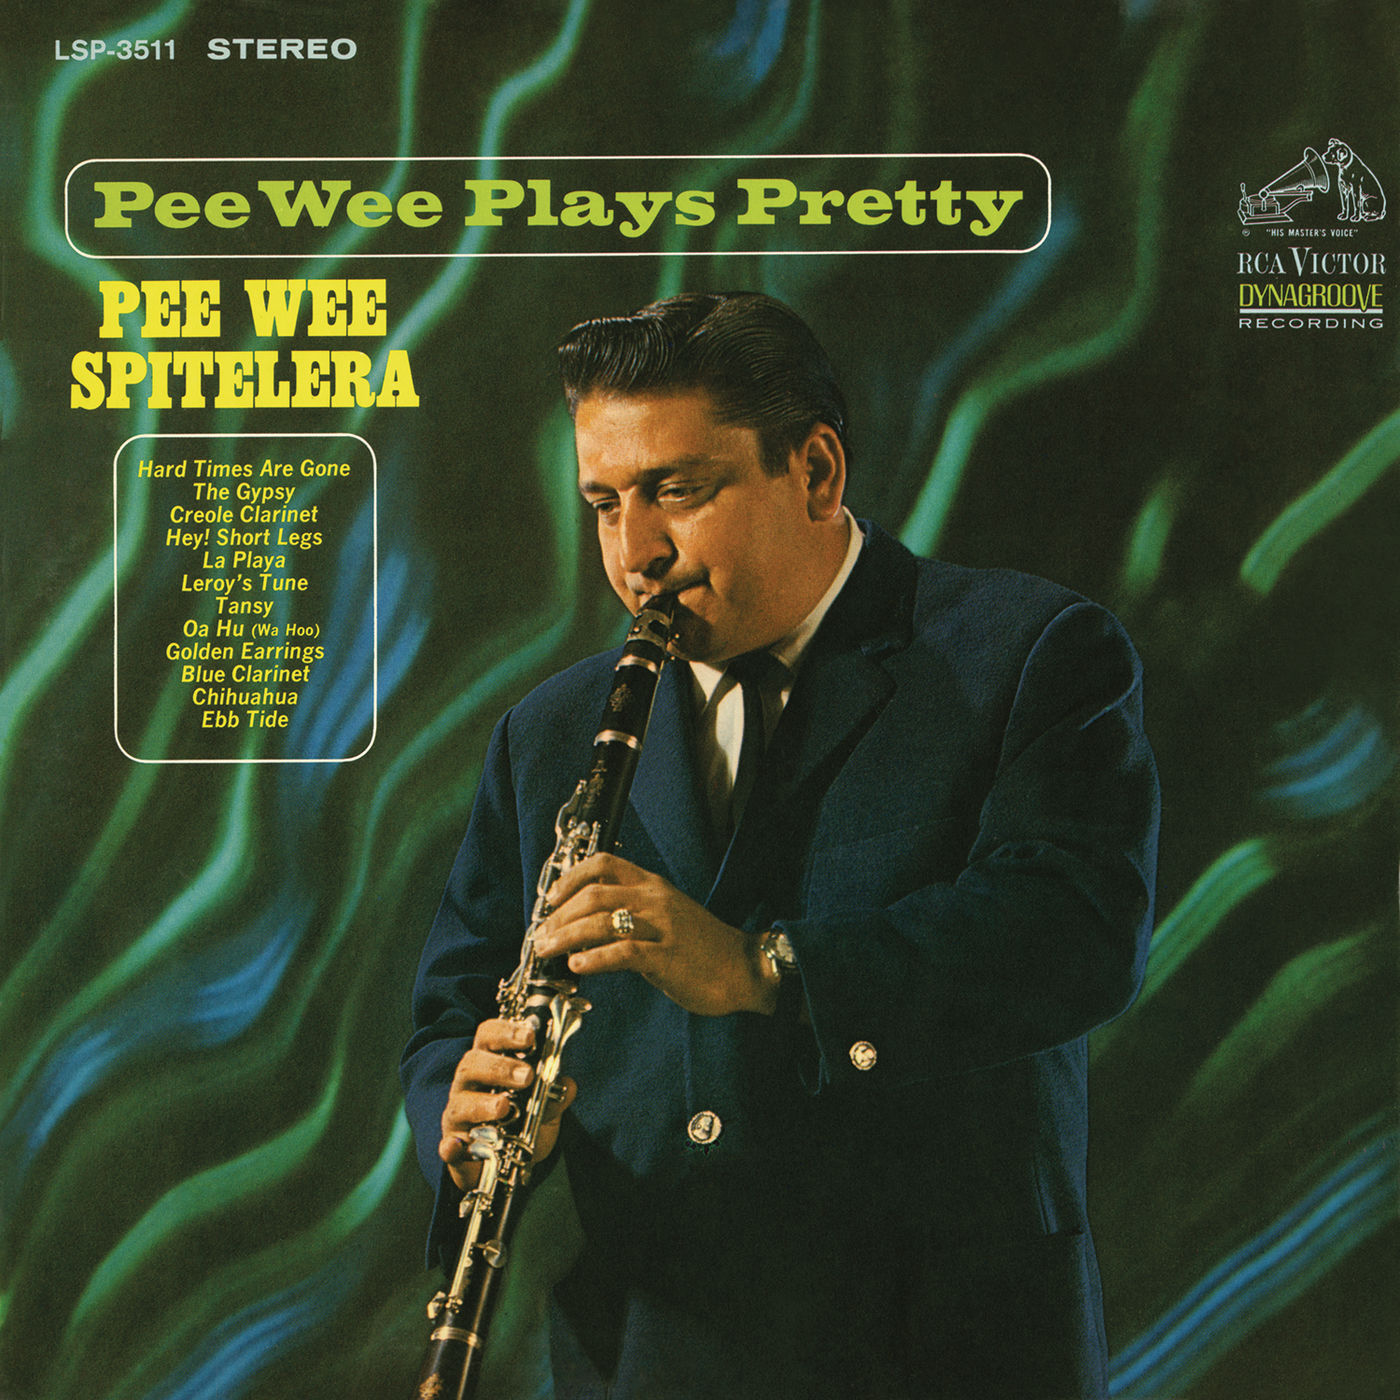 Pee Wee Spitelera – Pee Wee Plays Pretty